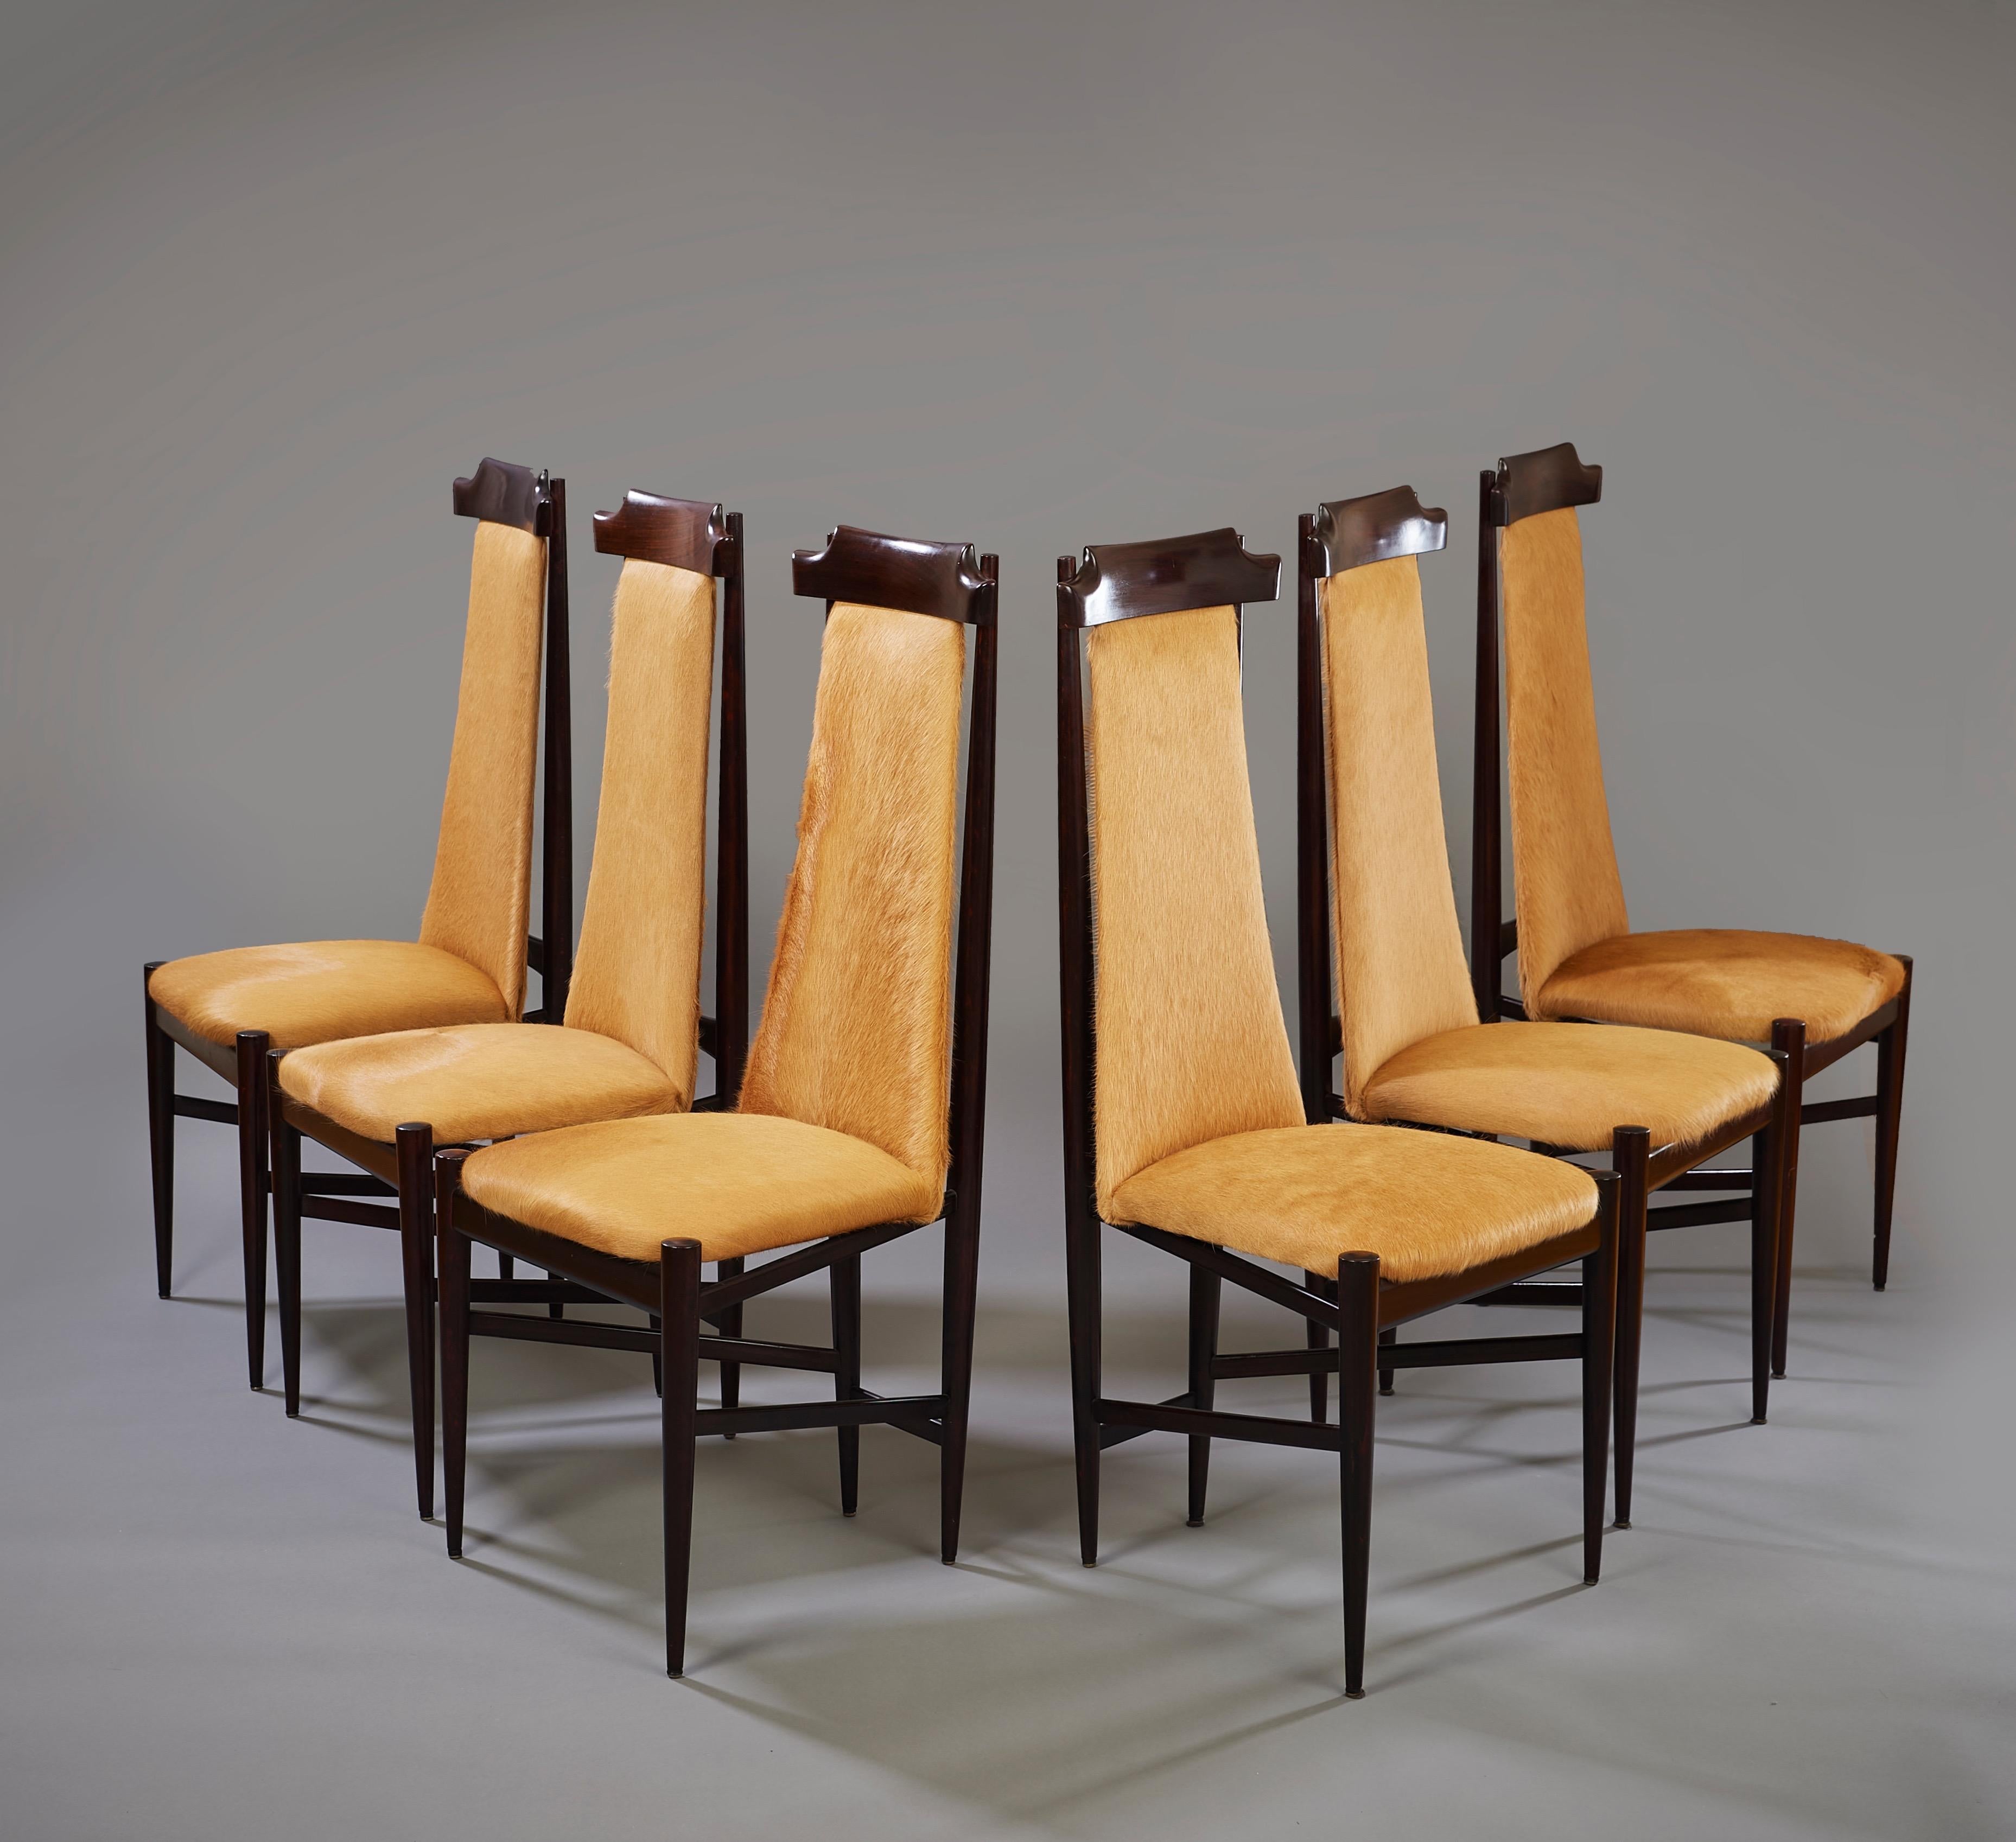 Sergio Rodrigues (1927-2014)

Un ensemble saisissant de six chaises de salle à manger modernistes du pionnier du design carioca Sérgio Rodrigues, en bois dur recouvert de peau de vache non rasée de couleur caramel. Les chaises synthétisent une